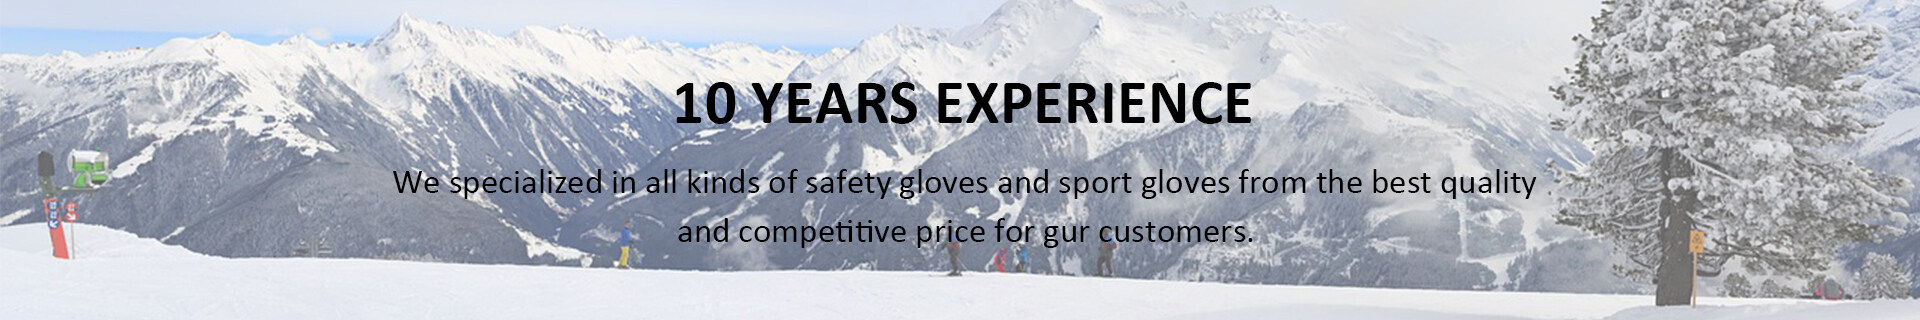 China thermal ski mittens,Custom the warmest ski mittens,best youth ski mittens Sales,best winter ski mittens,buy ski mittens Supply